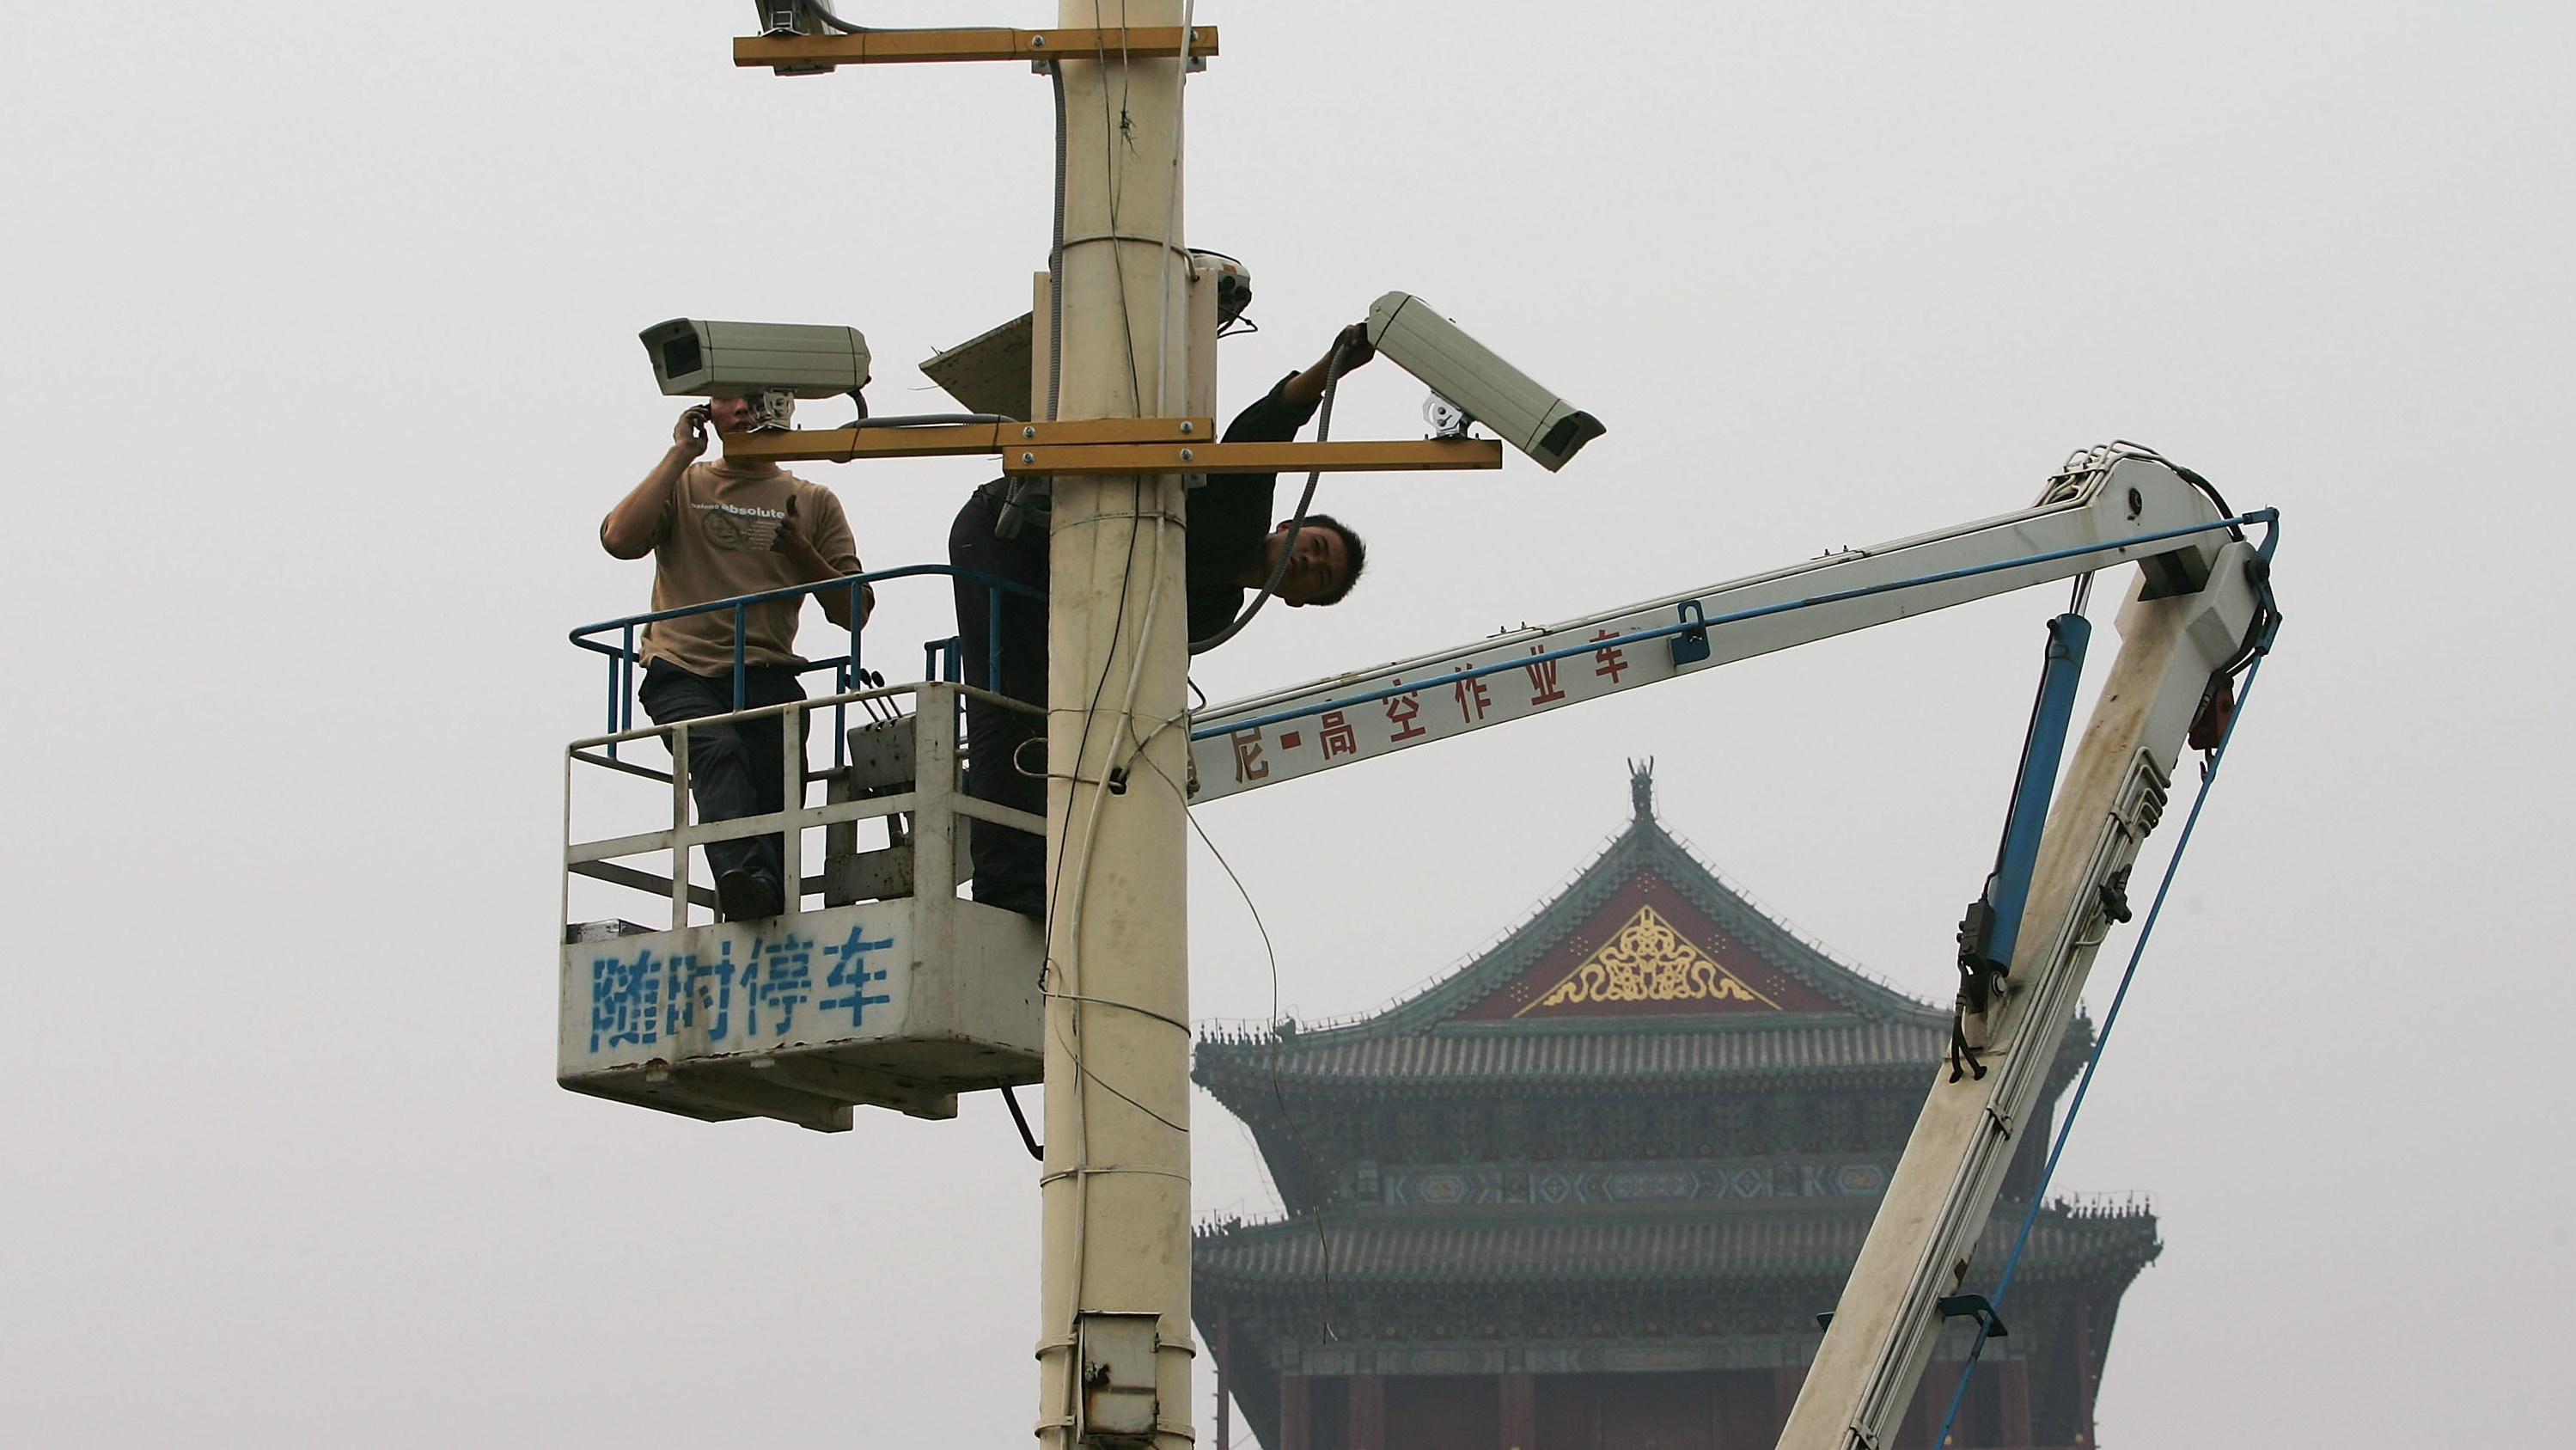 câmera sendo instalada na china. há duas pessoas em um guindaste, onde se vê logogramas chineses. ao fundo, um telhado de um templo oriental.